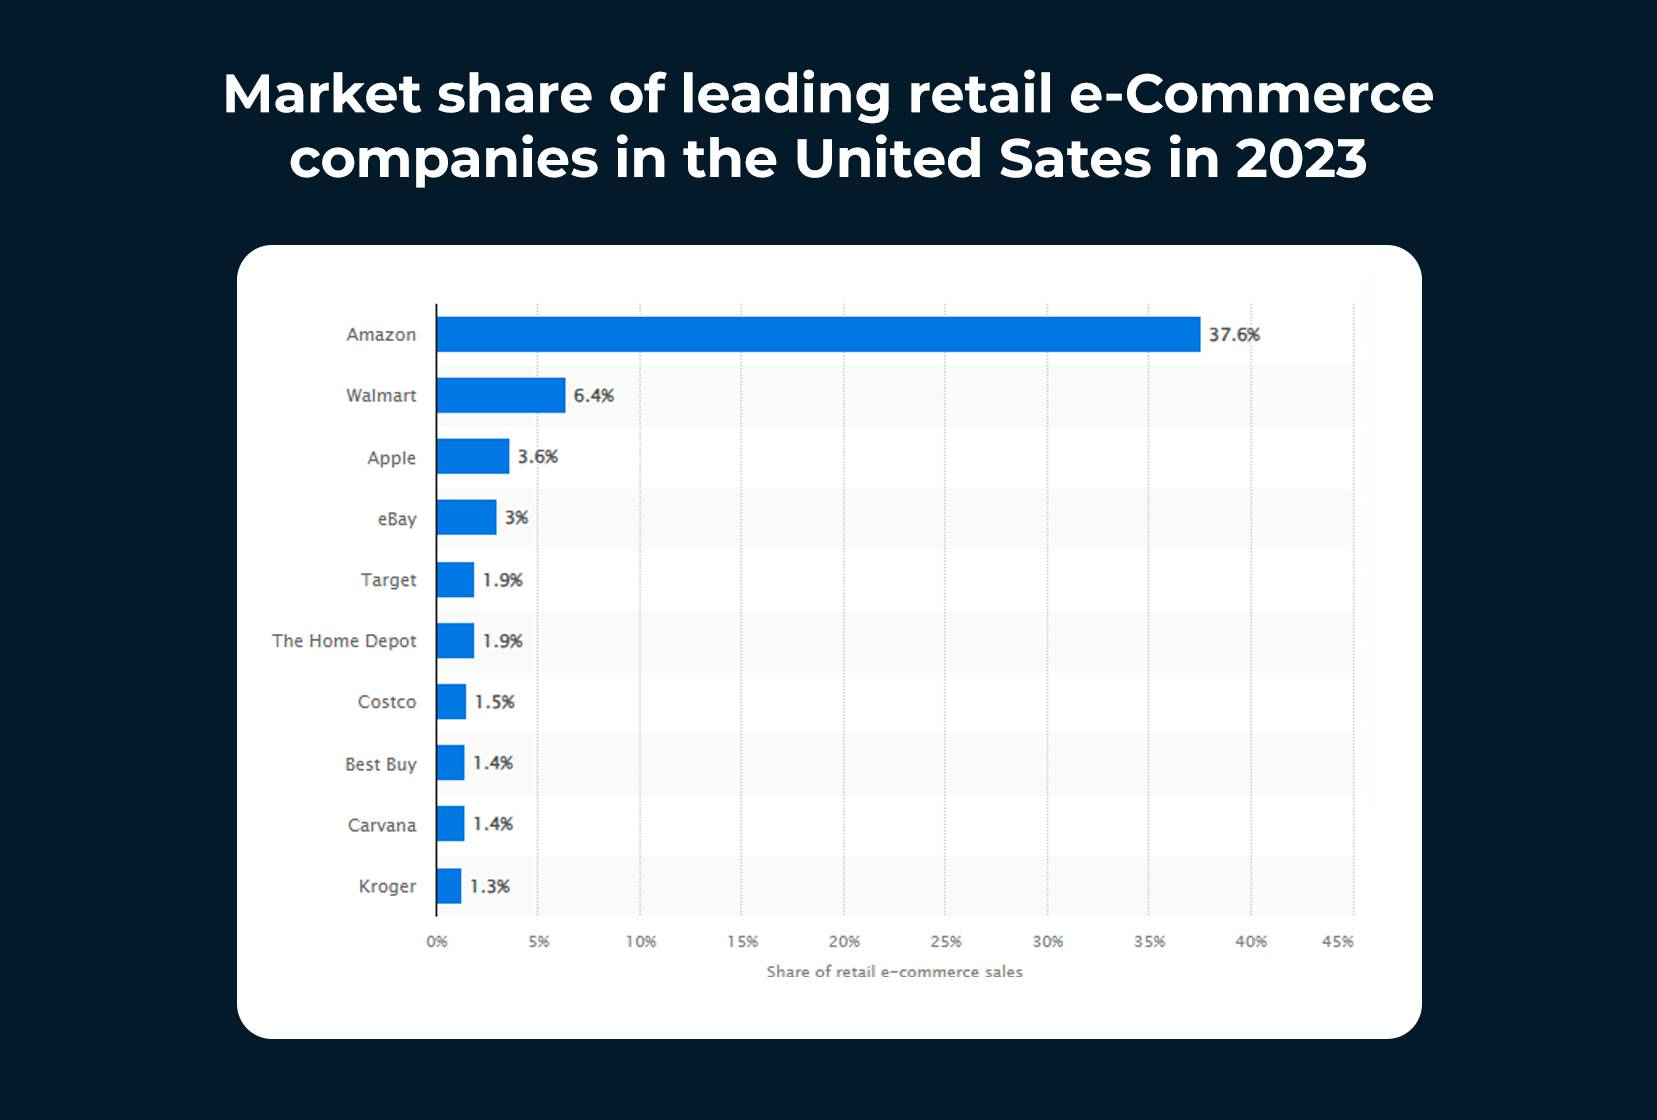 Part de marché des principales entreprises de commerce électronique de détail aux États-Unis